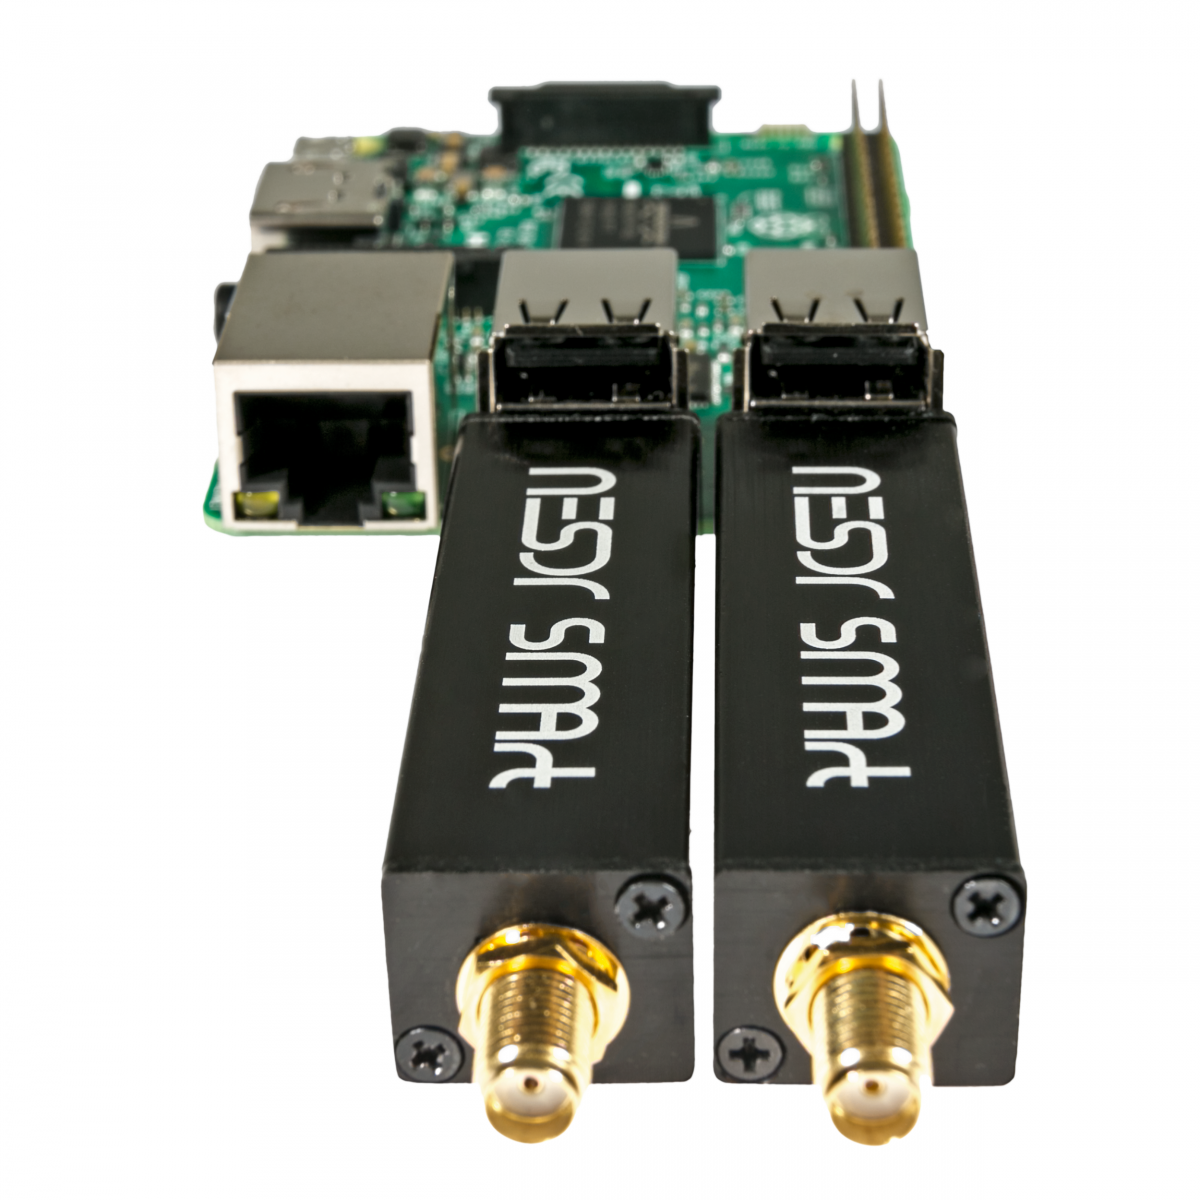 Nooelec Nooelec NESDR SMArt v5 SDR HF/VHF/UHF (100kHz-1.75GHz) RTL-SDR.  RTL2832U  R820T2-Based Software Defined Radio SDR Receivers Software  Defined Radio